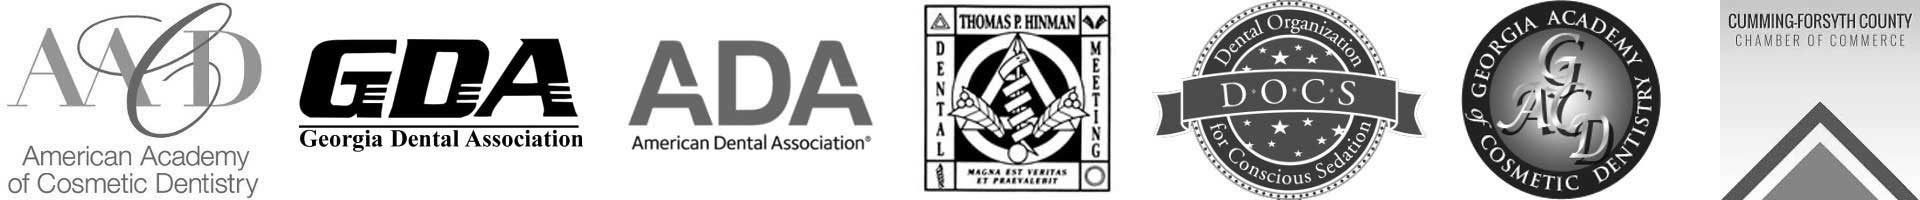 Dental Associatons logos